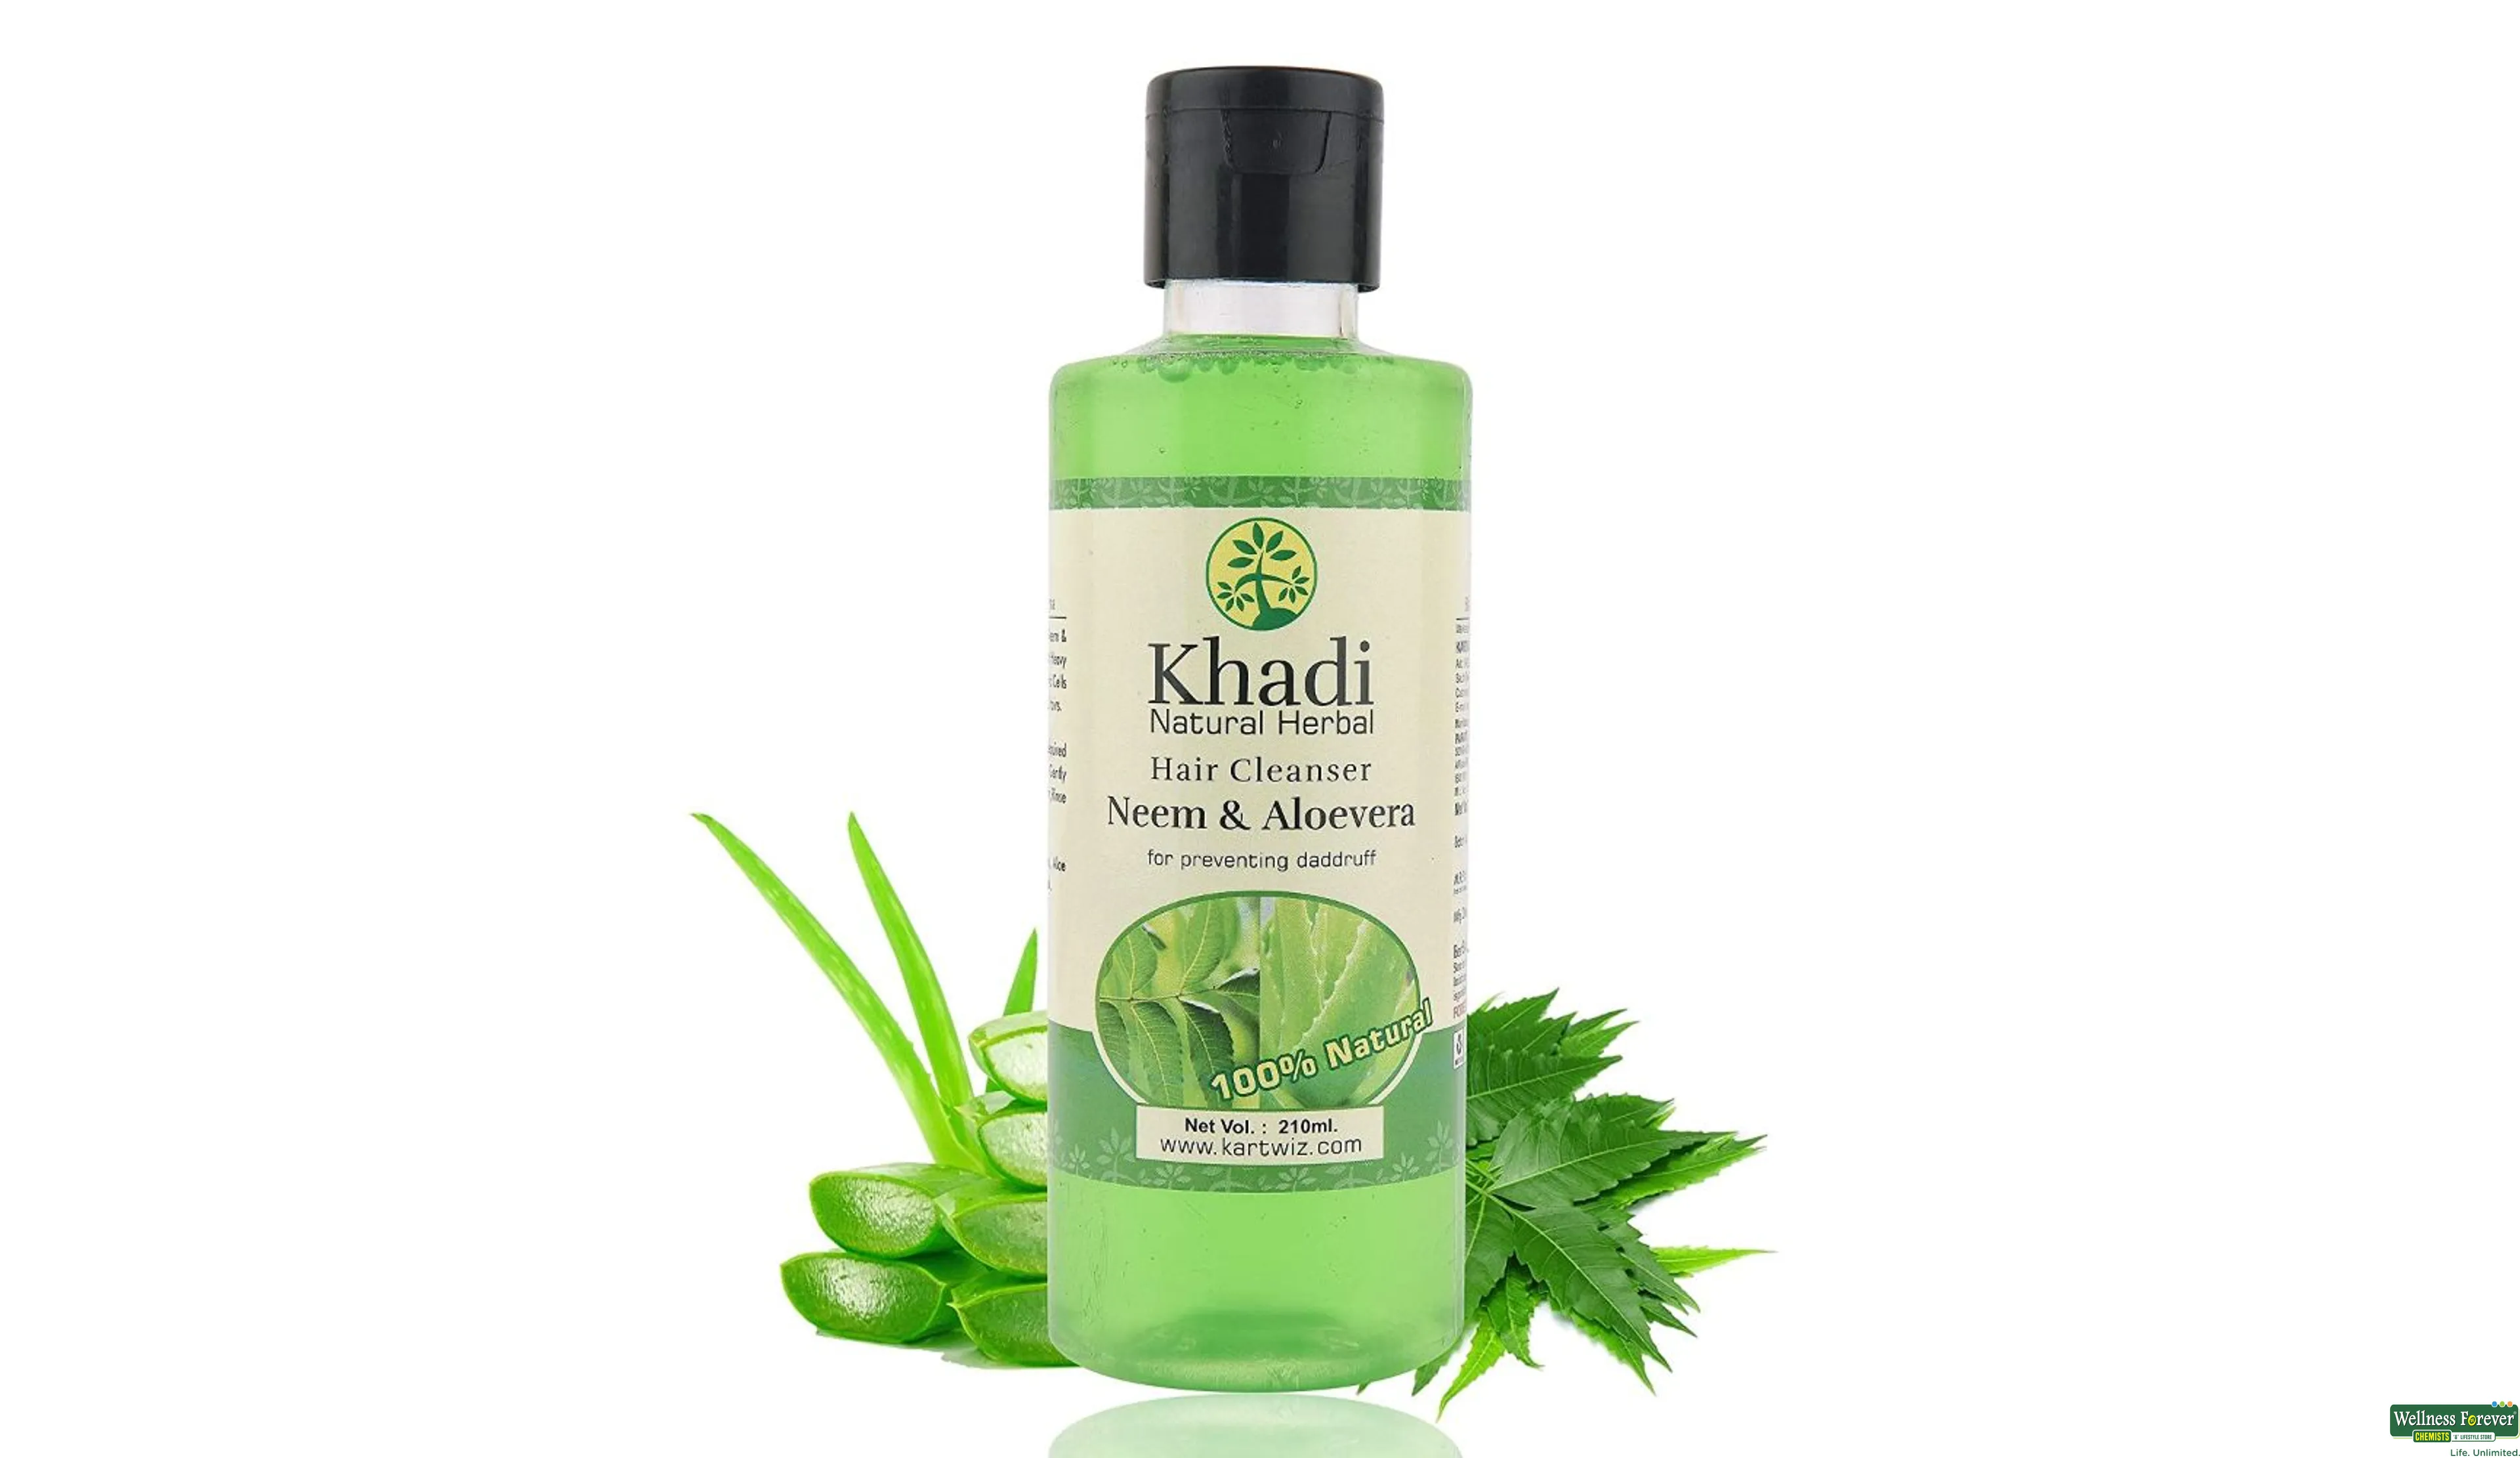 nawilżający szampon neem aloe vera 210g marki khadi